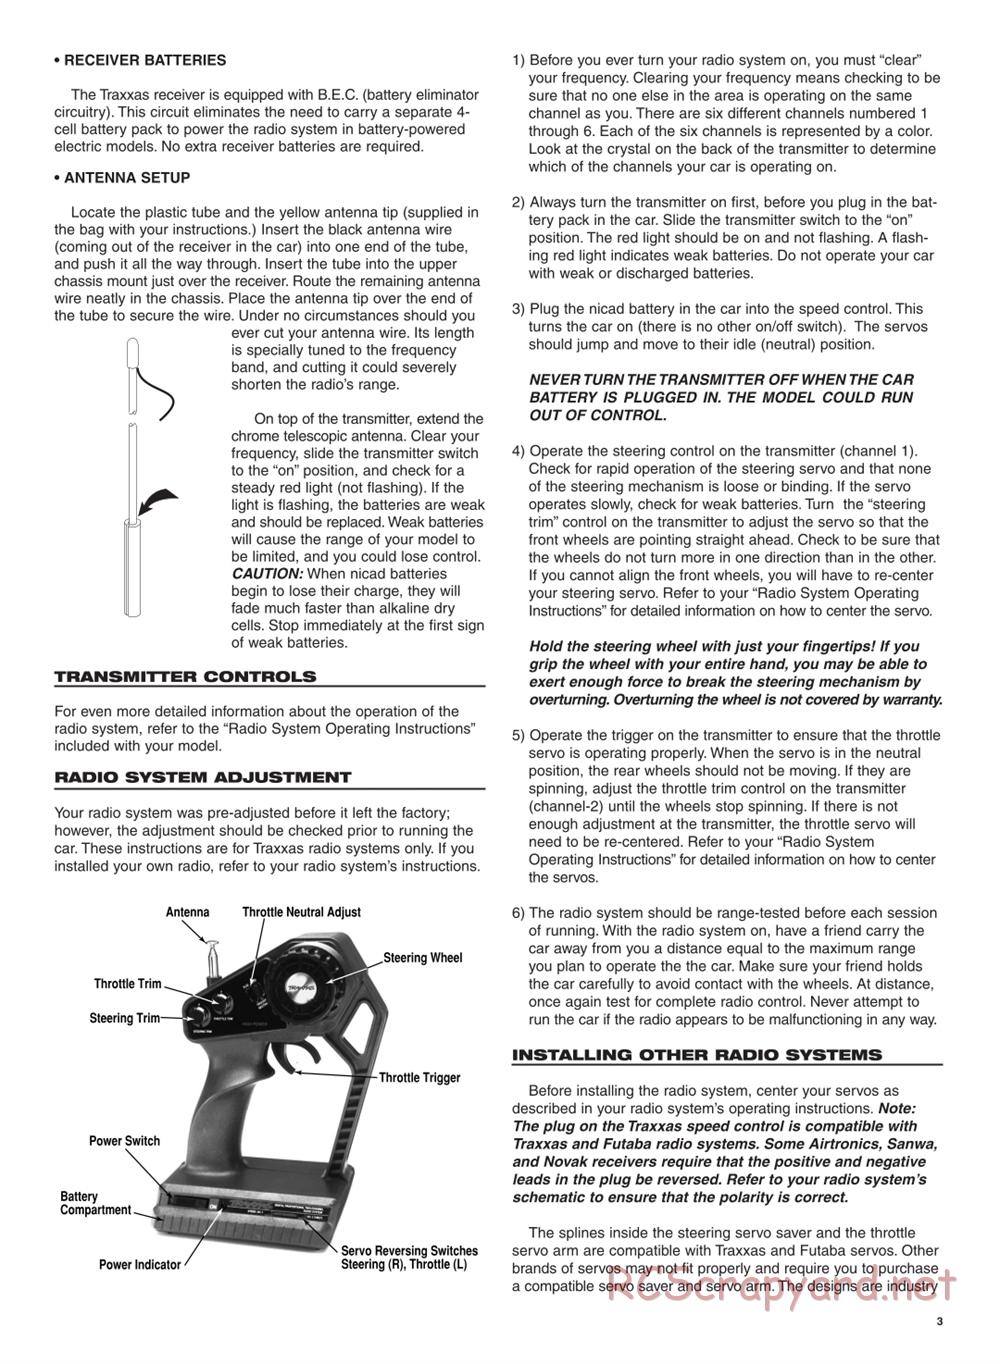 Traxxas - 4-Tec - Manual - Page 3